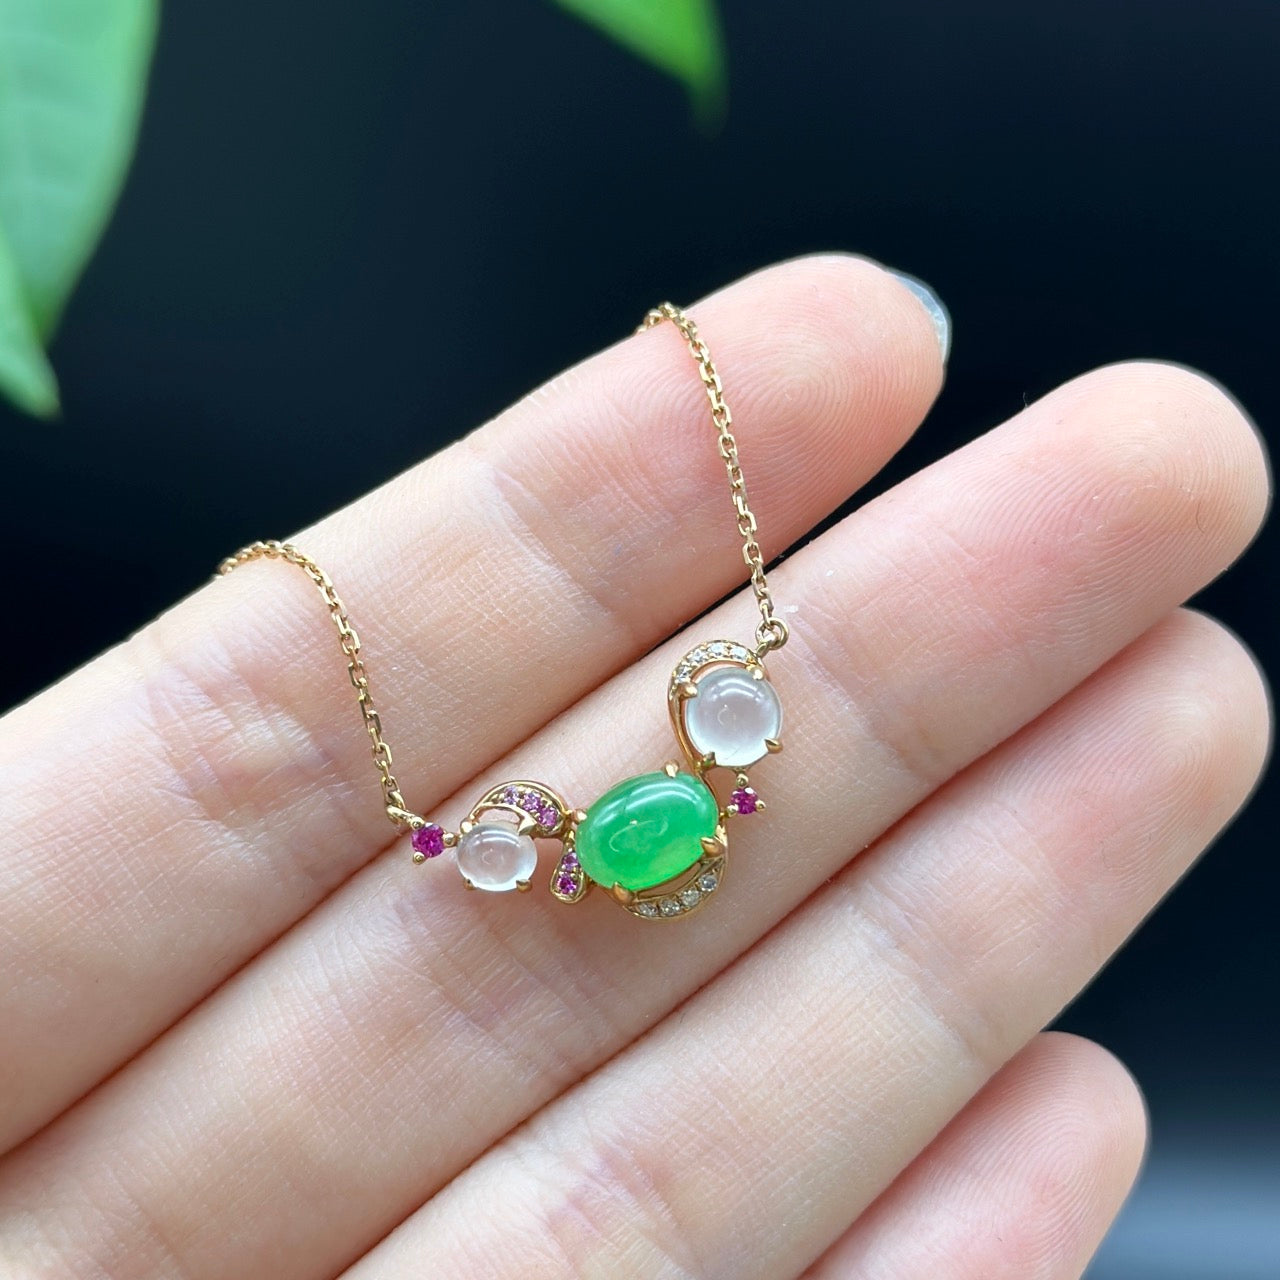 RealJade 18k Rose Gold Jadeite Jade Diamond Bubble Pendant Necklace